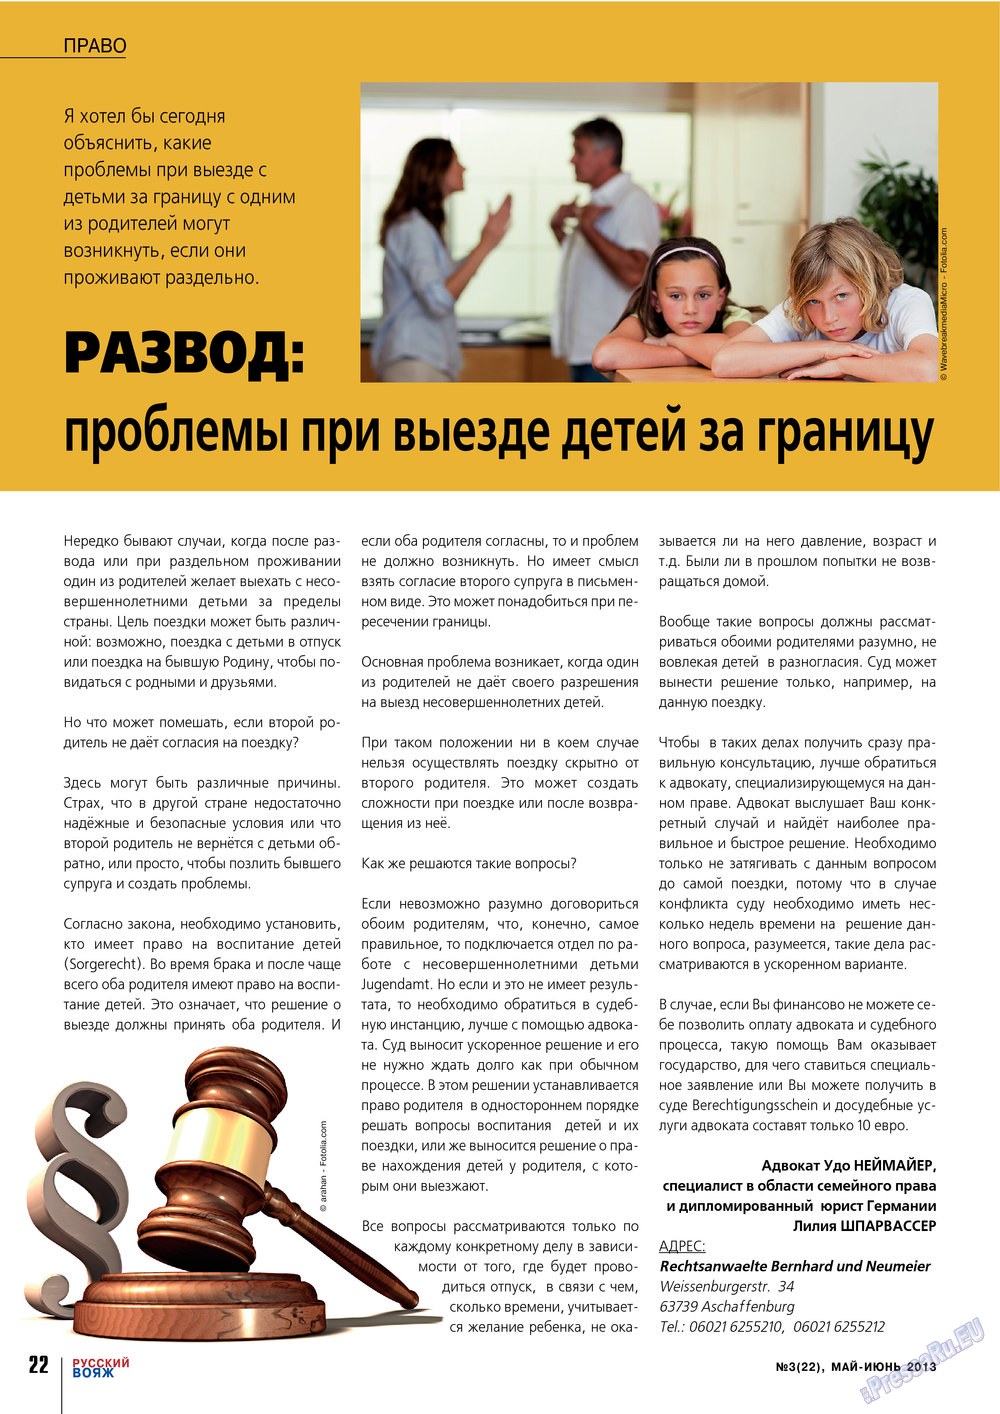 Русский вояж (журнал). 2013 год, номер 22, стр. 22